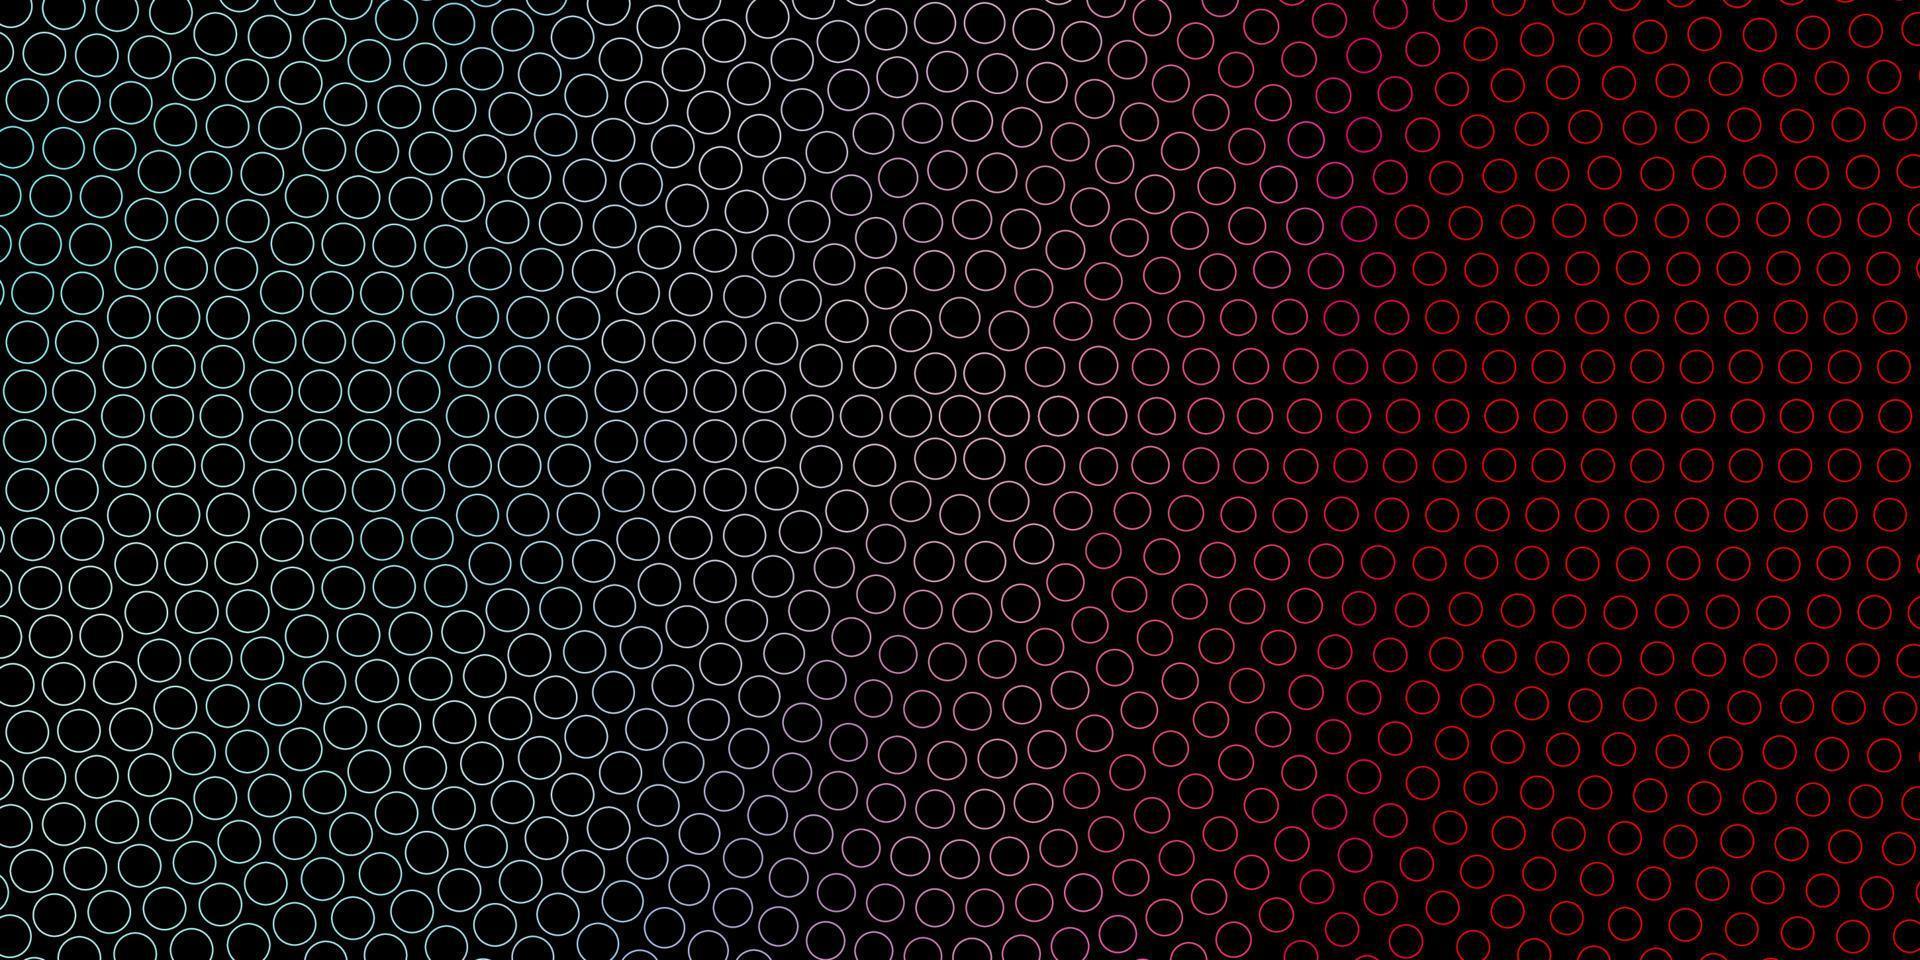 mörkblå, röd vektorlayout med cirkelformer. vektor